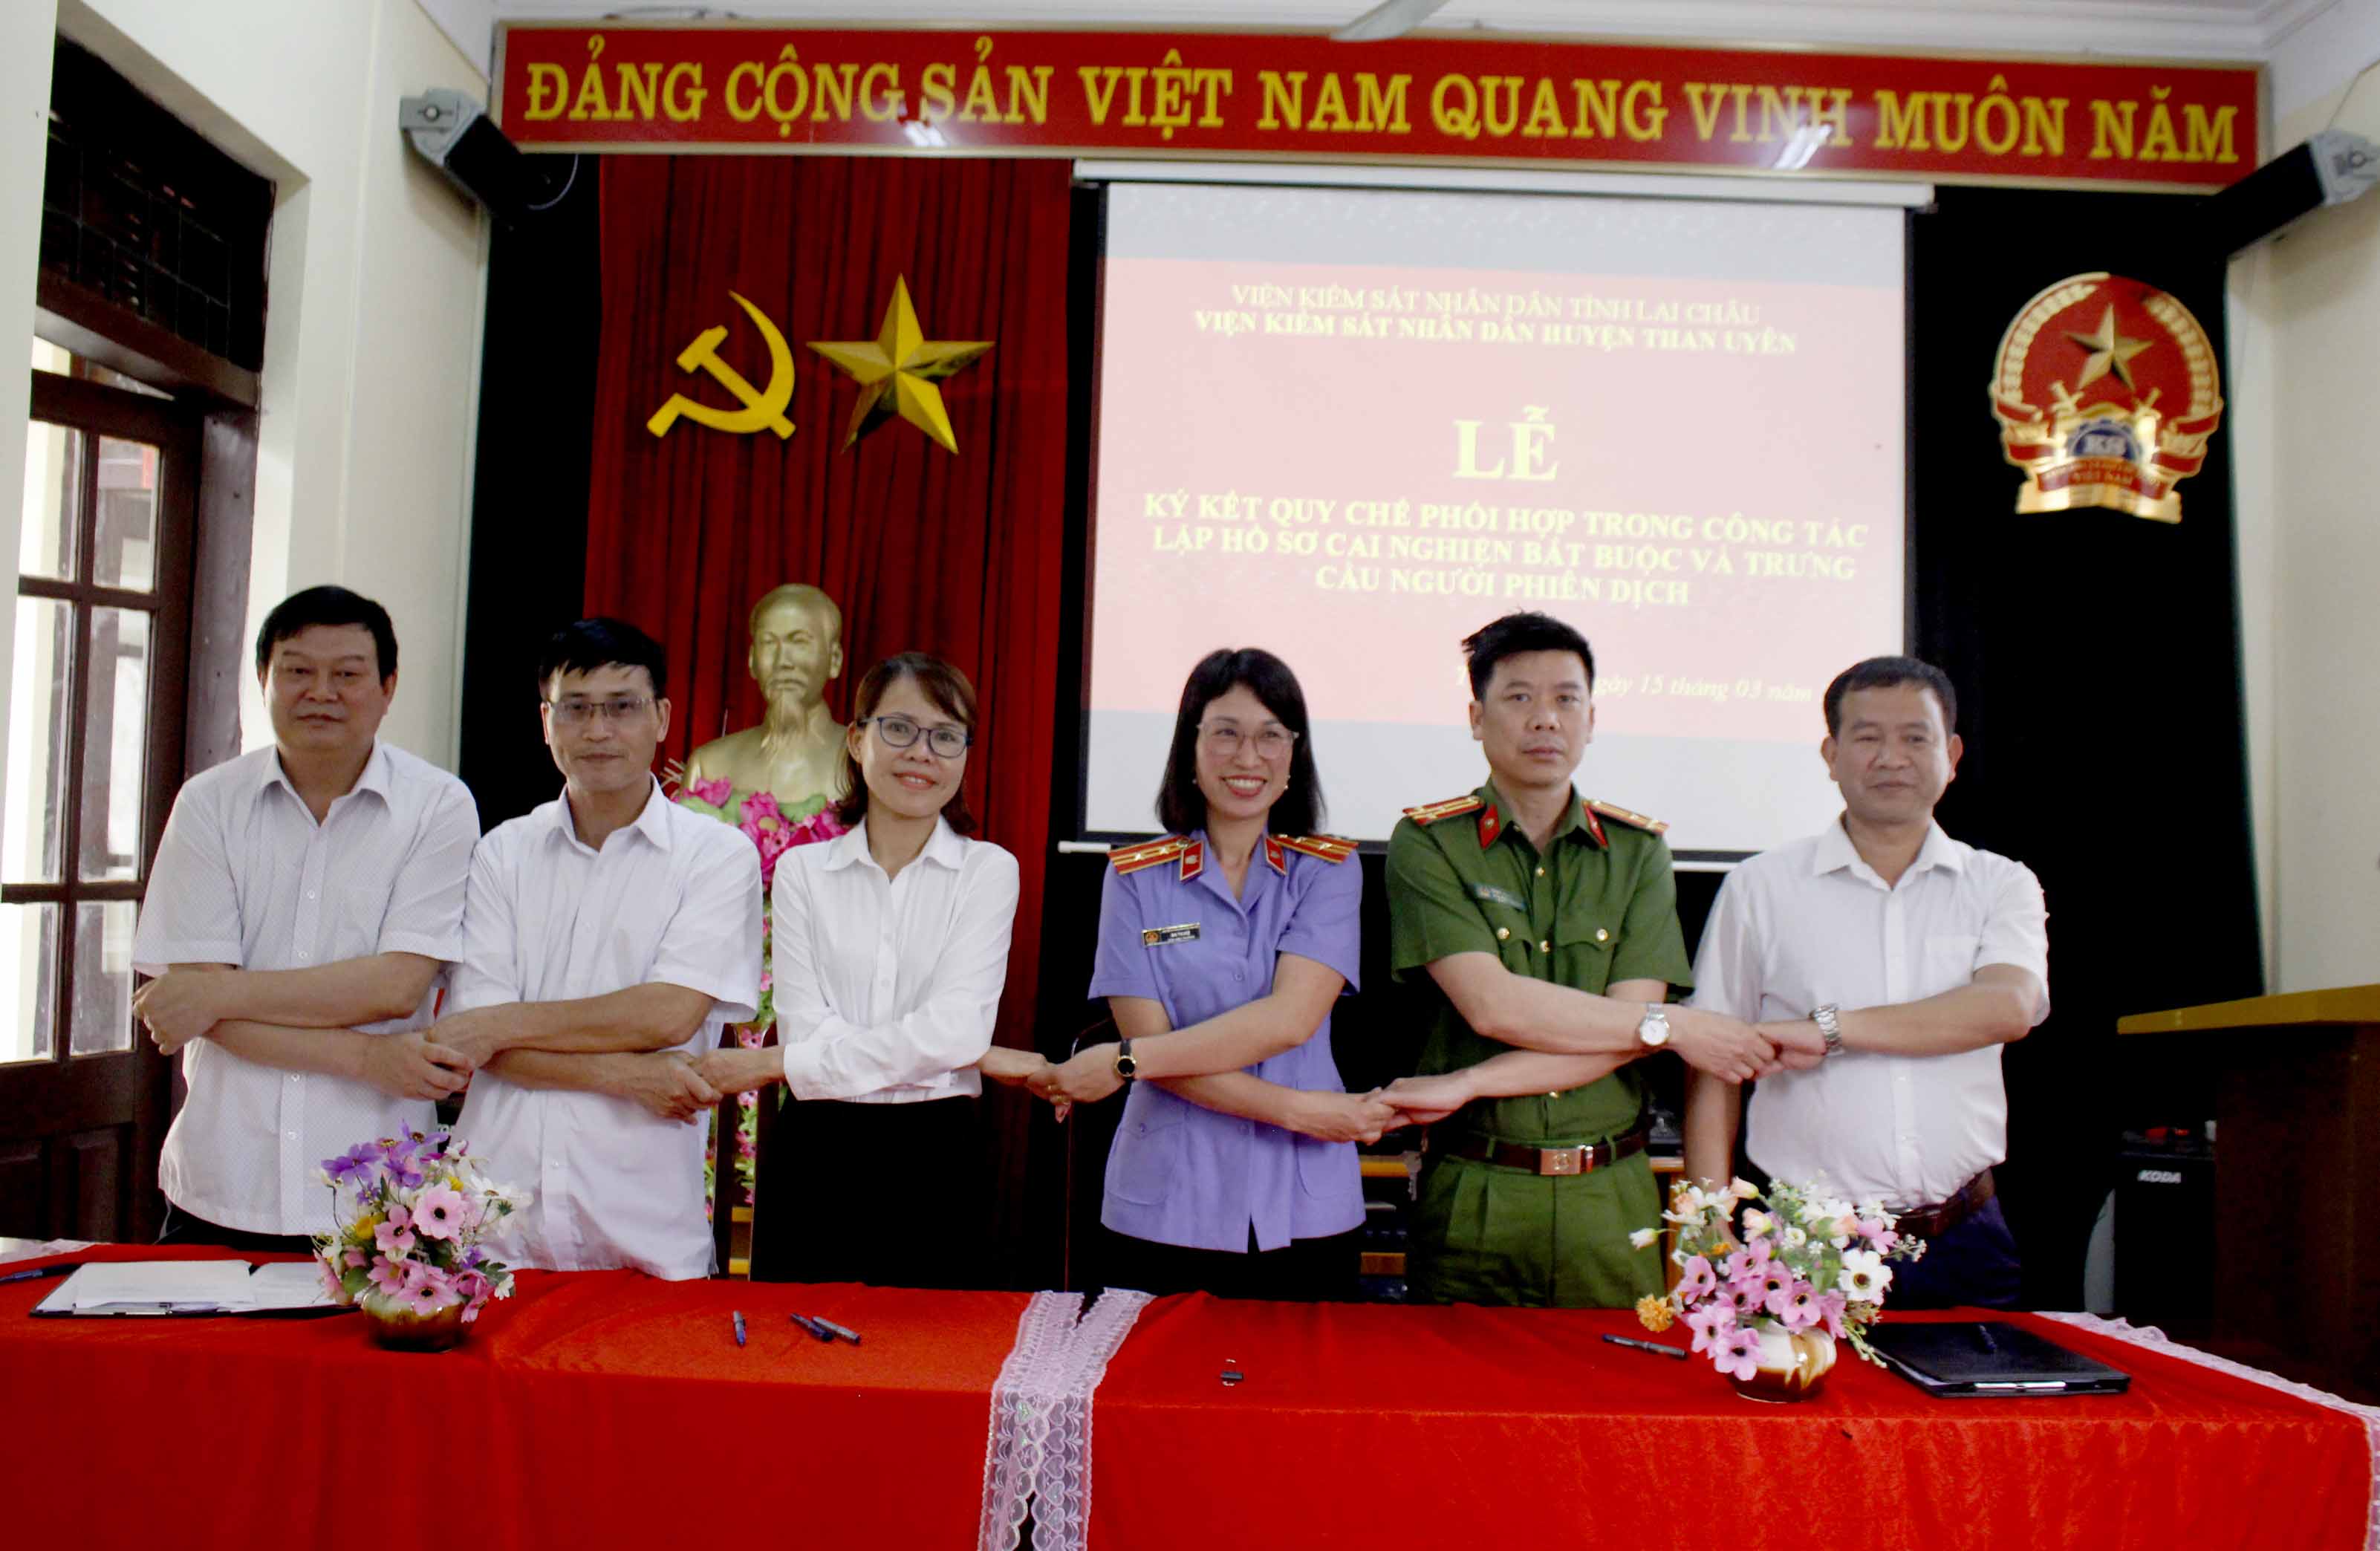 Liên ngành khối tố tụng huyện Than Uyên ký Quy chế phối hợp với các ban ngành của huyện trong công tác lập hồ sơ cai nghiện bắt buộc. 